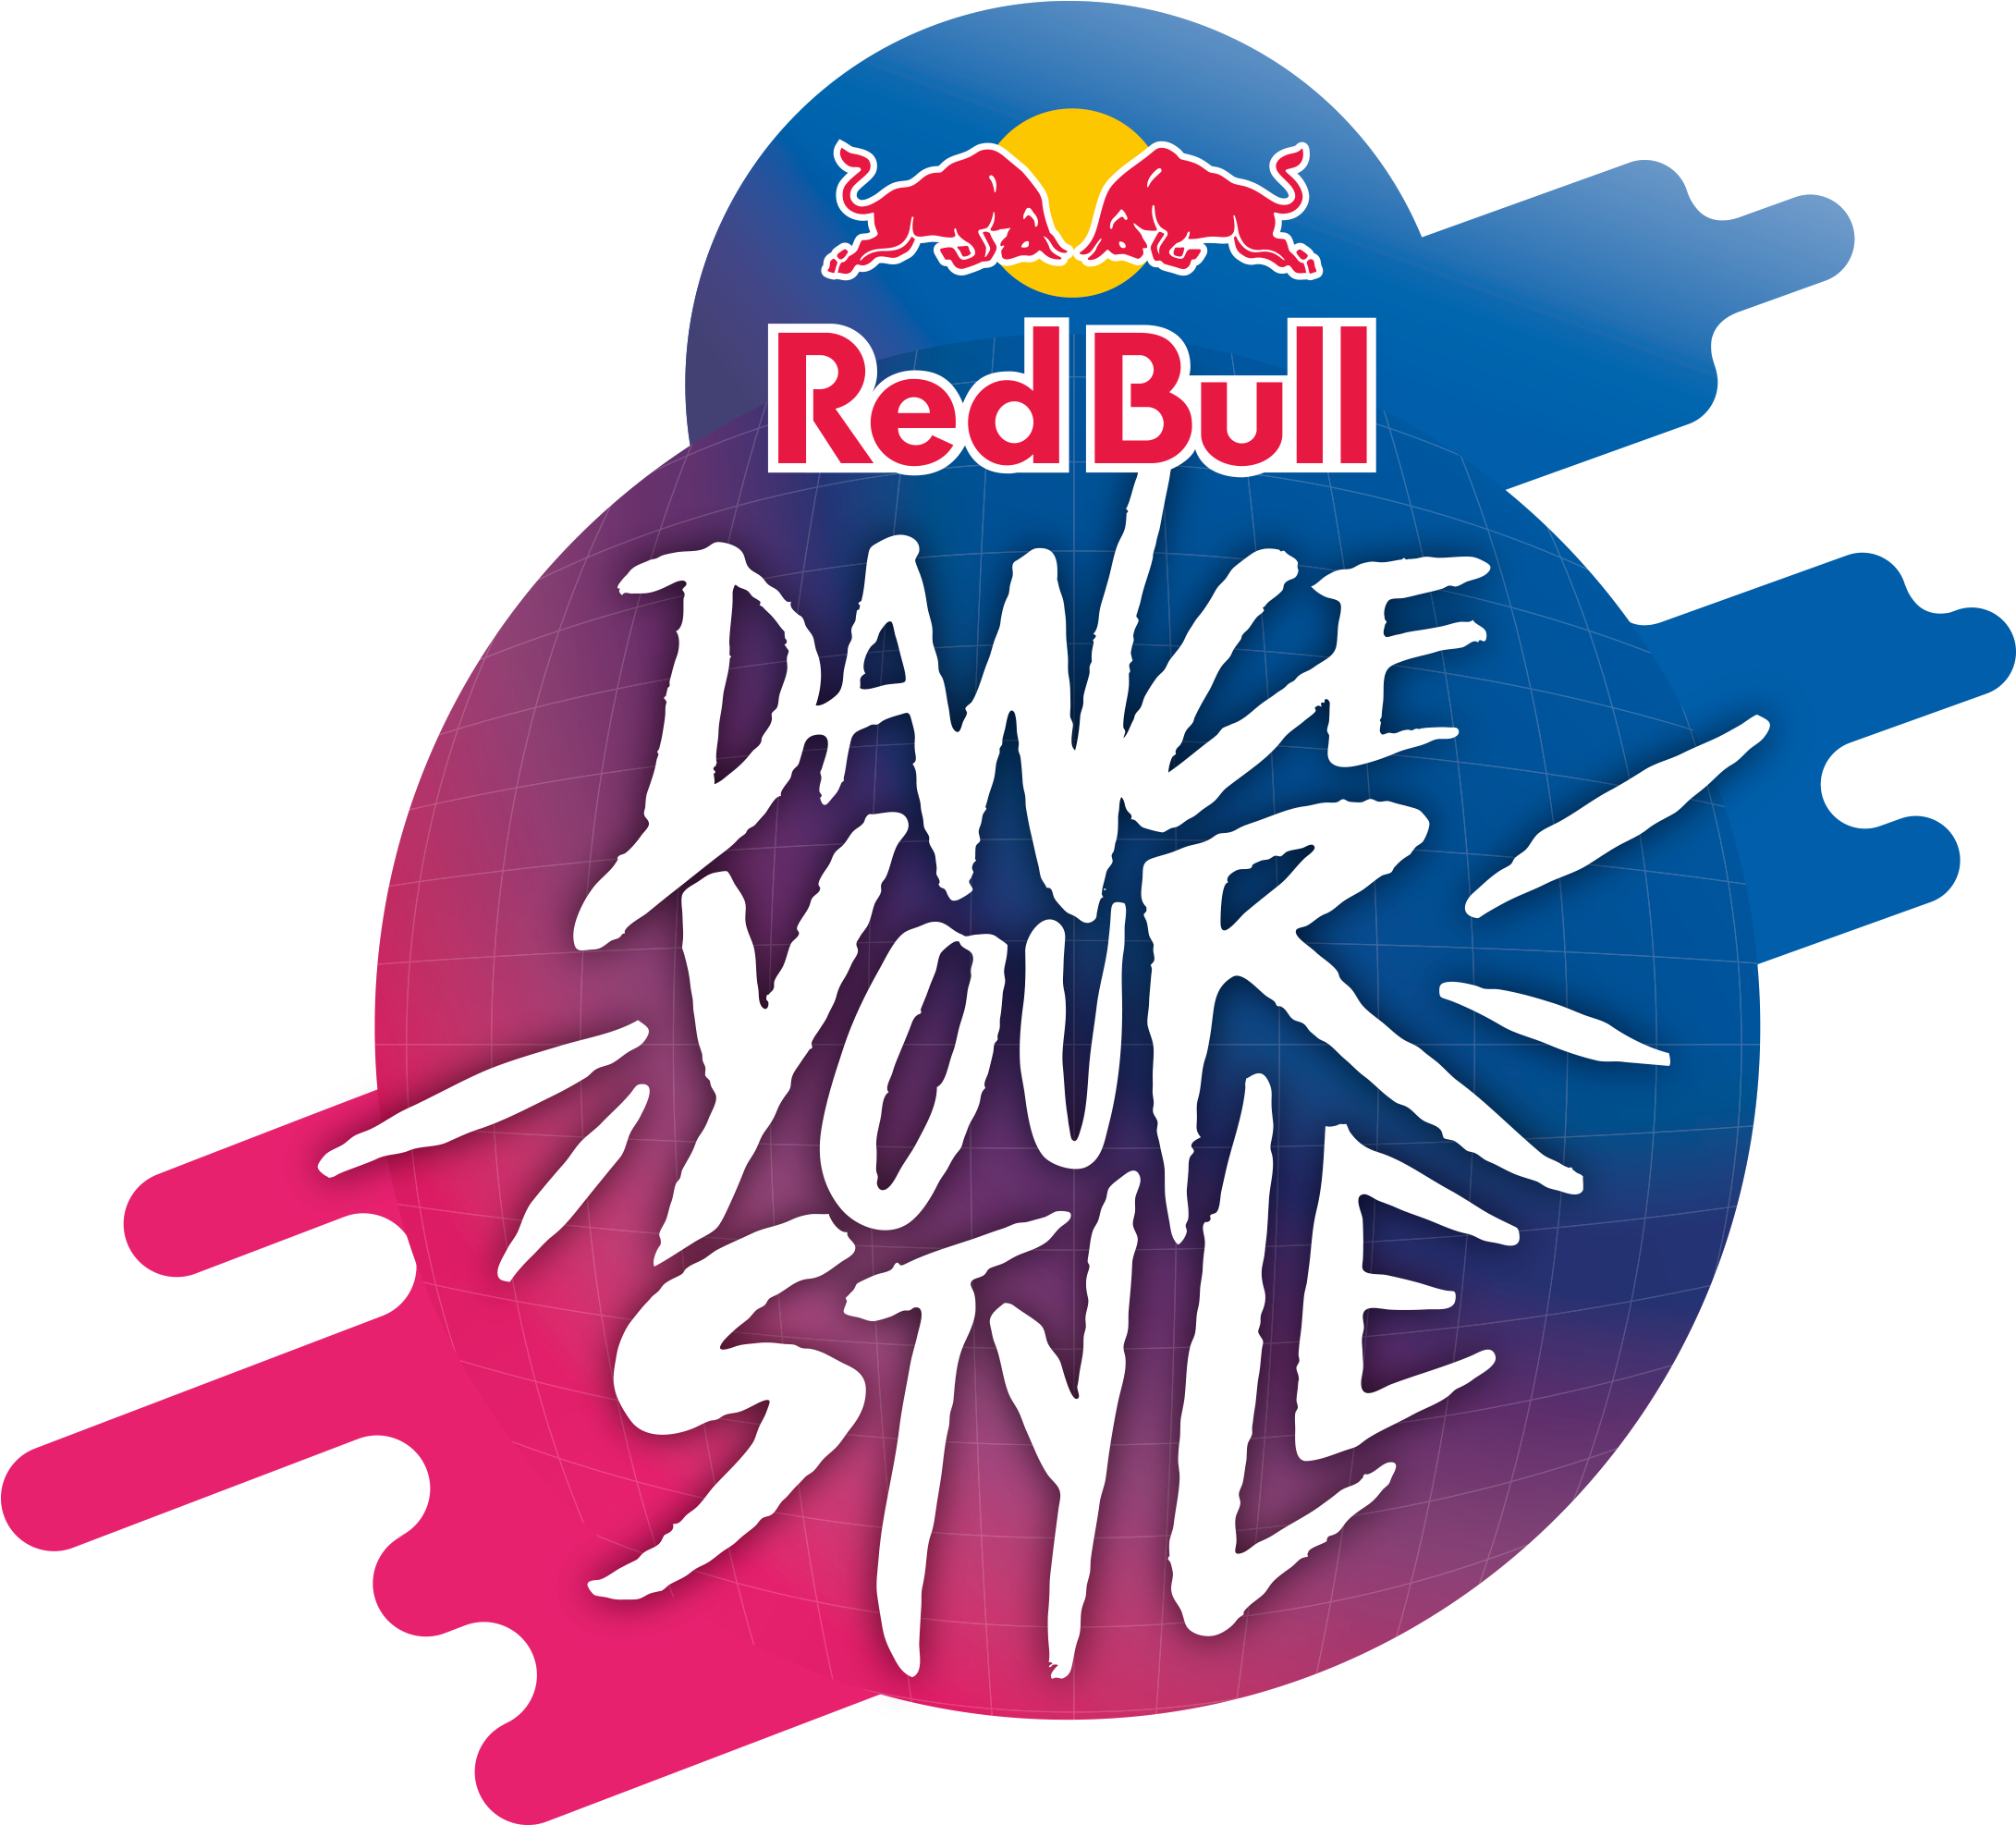 Red Bull Dance Your Style - Red Bull Dance Your Style (2480x2202)